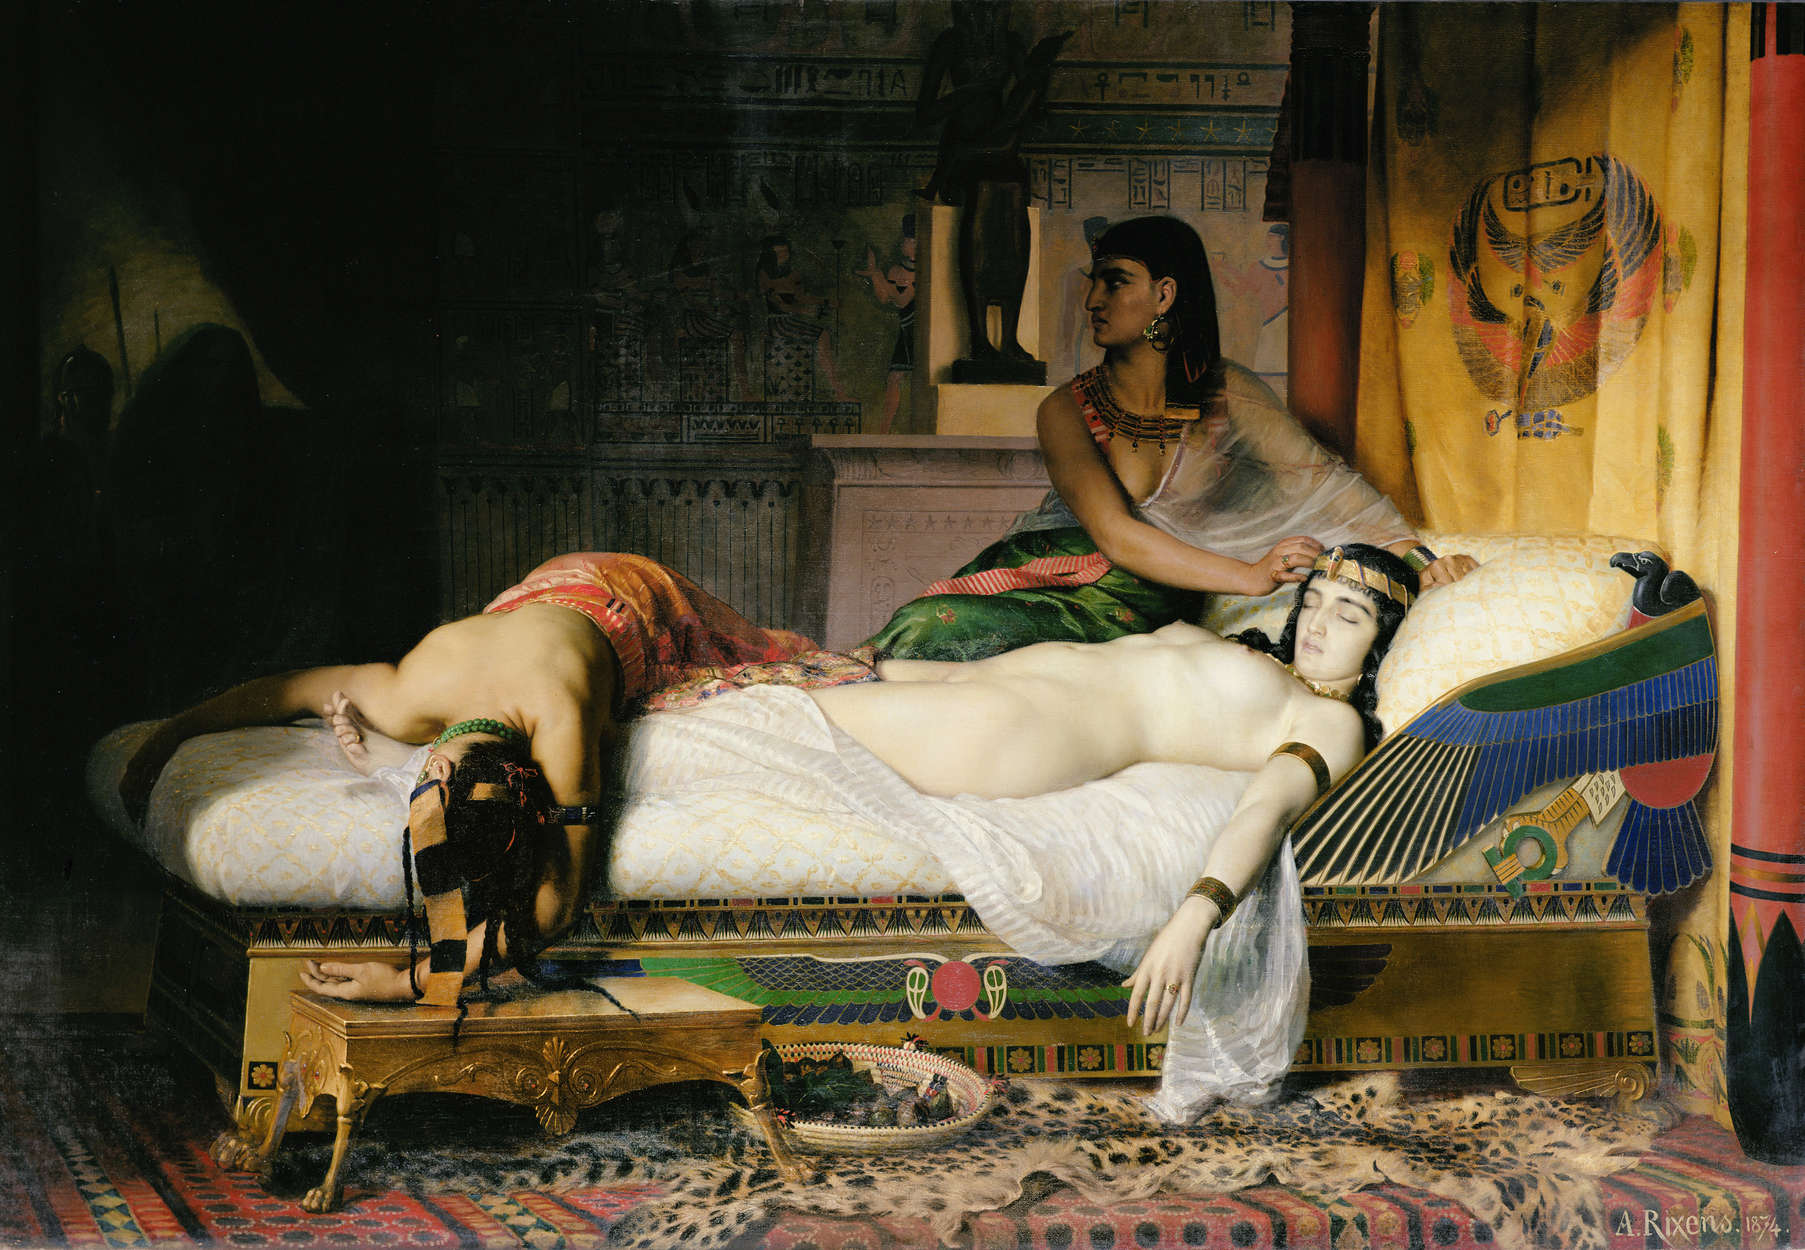             Morte di Cleopatra", murale di August Rixens
        